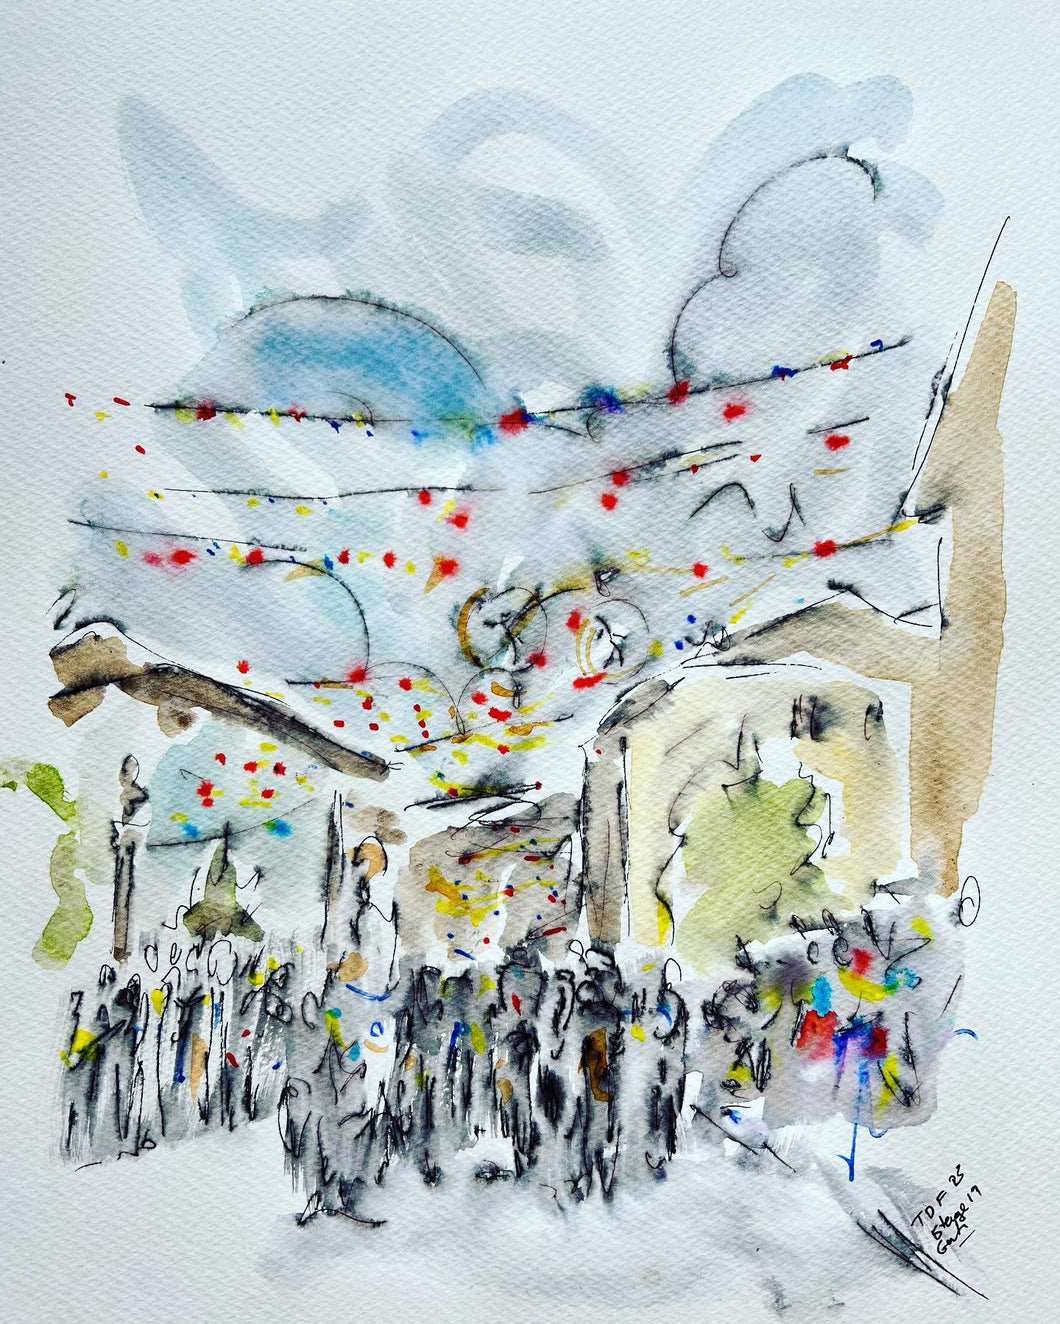 Tour de villages - Cycling painting